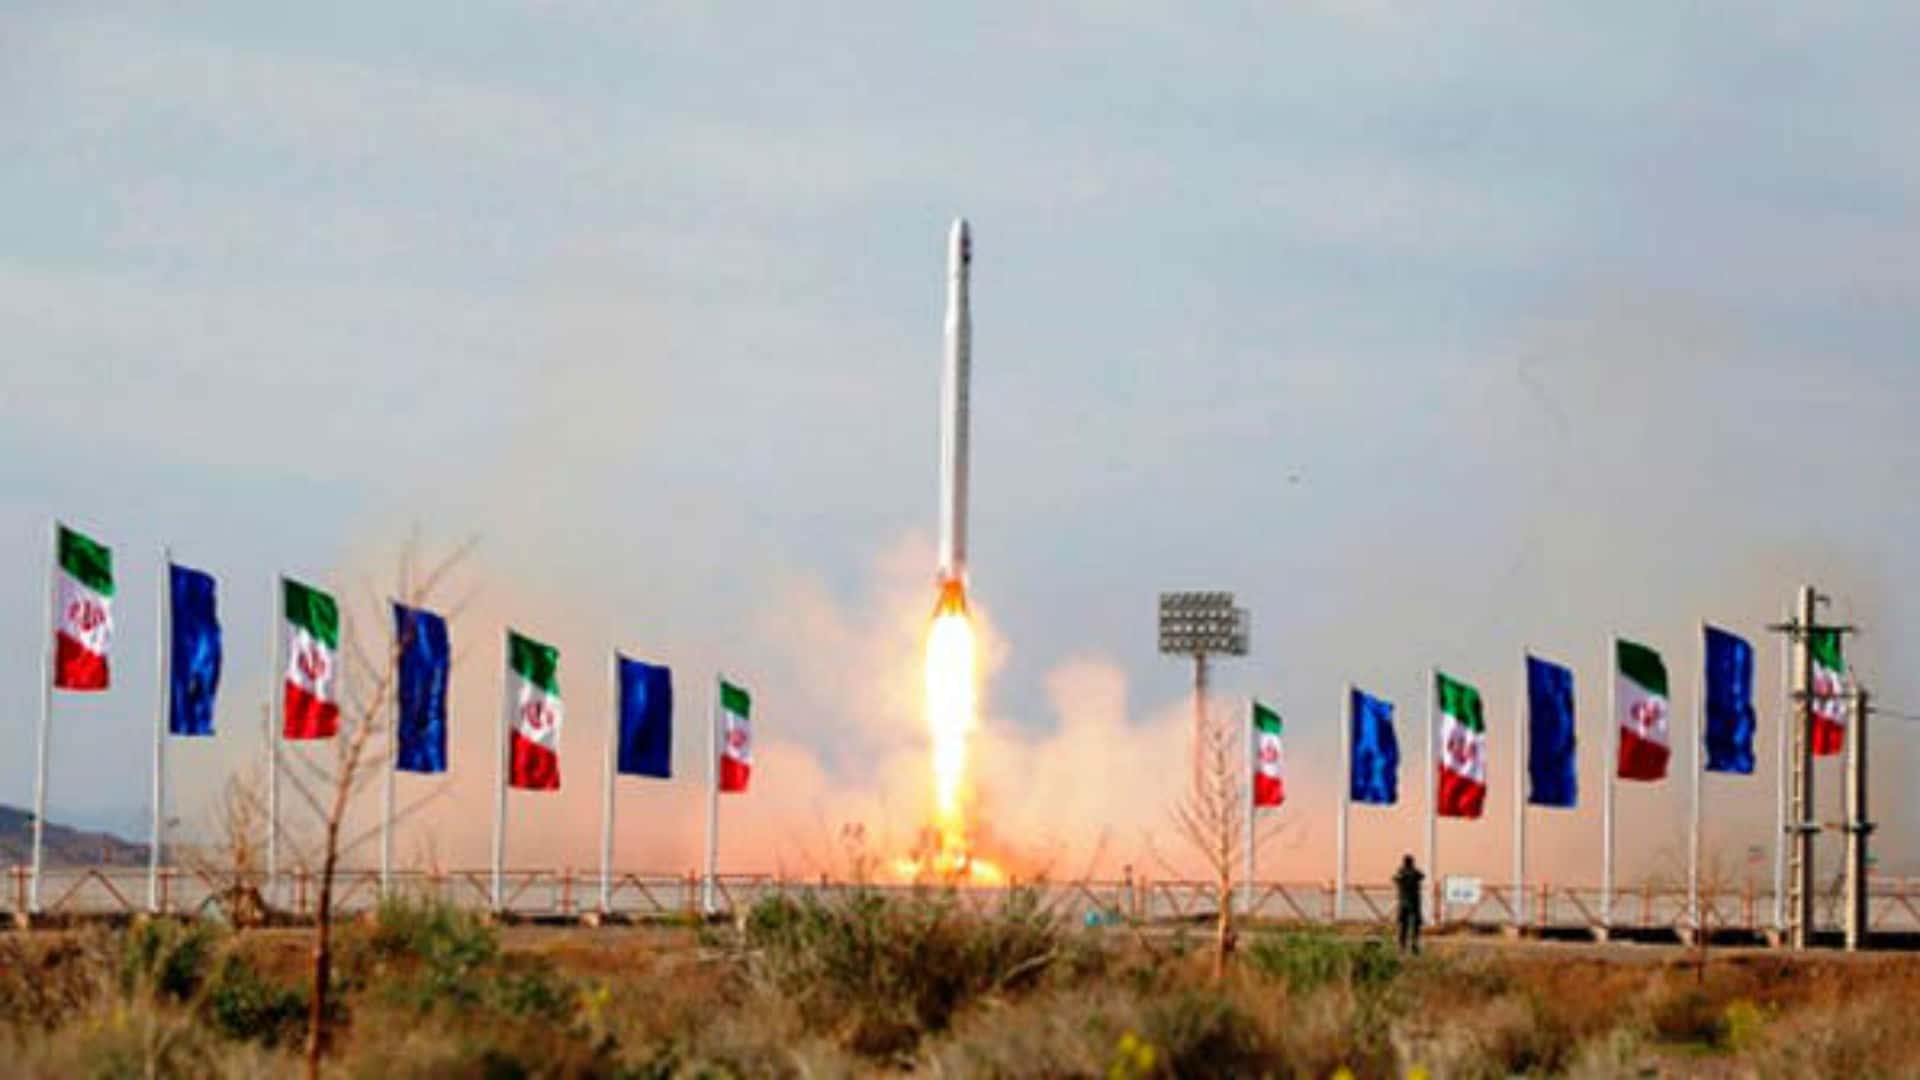 El 22 de abril, Irán completó su 5° lanzamiento orbital exitoso en su historia al lanzar el cohete Qased. Llevó al satélite Noor-1 a órbita.